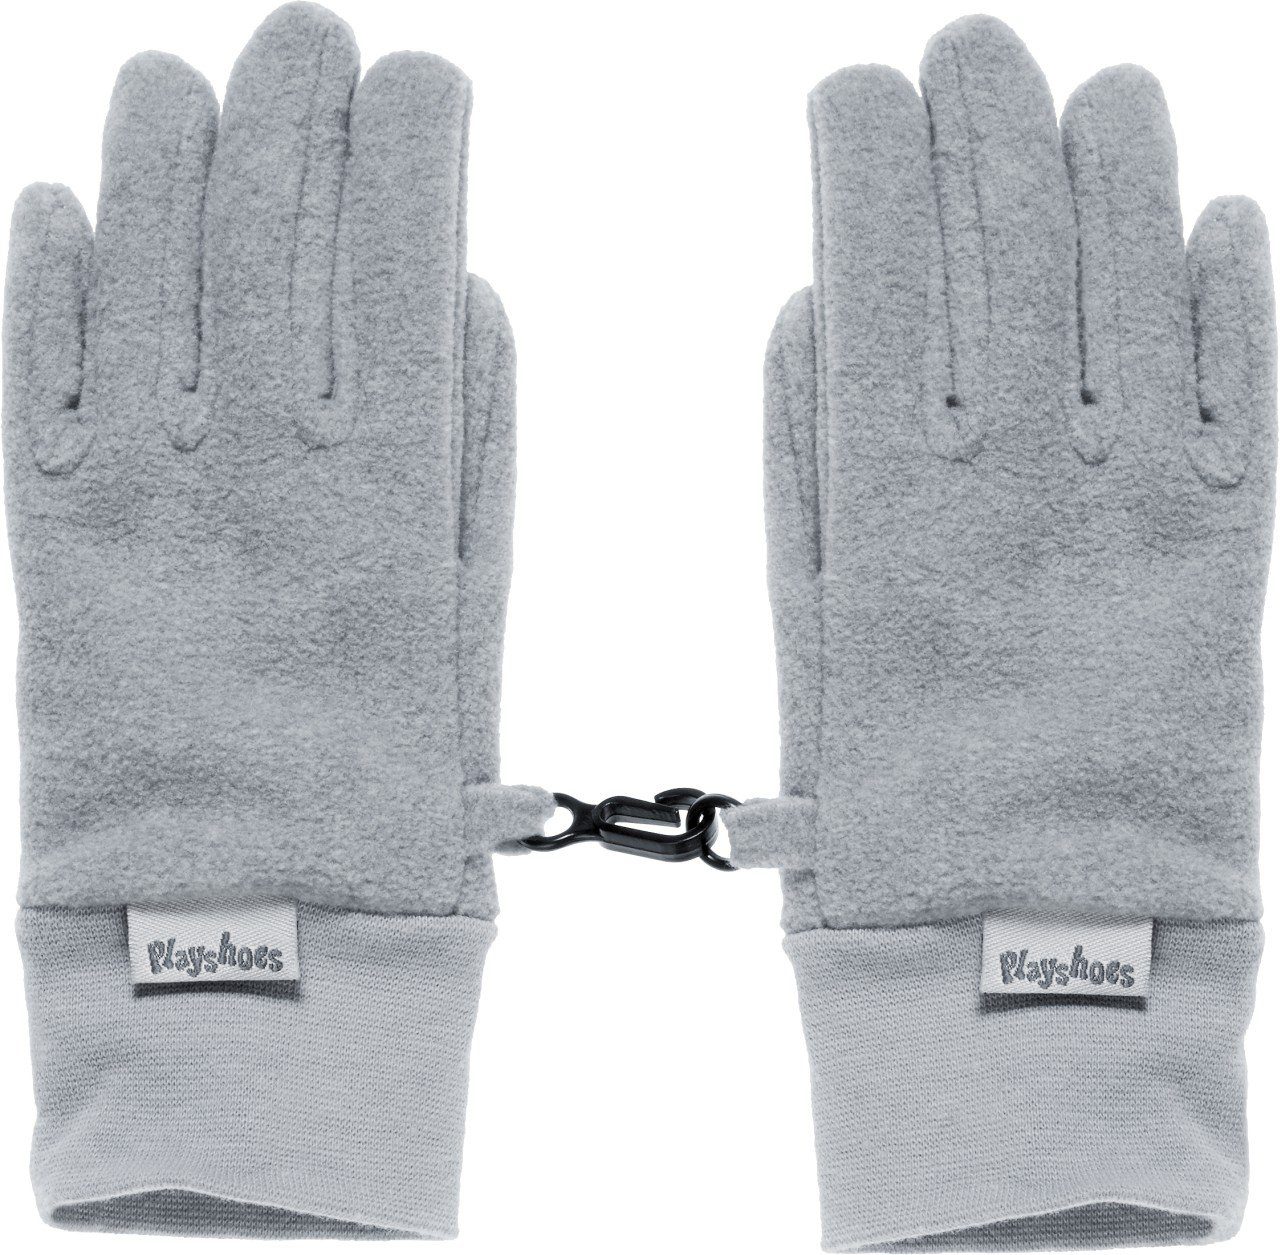 Finger-Handschuh Playshoes in Fleece, verschiedenen Skihandschuhe erhältlich Farben